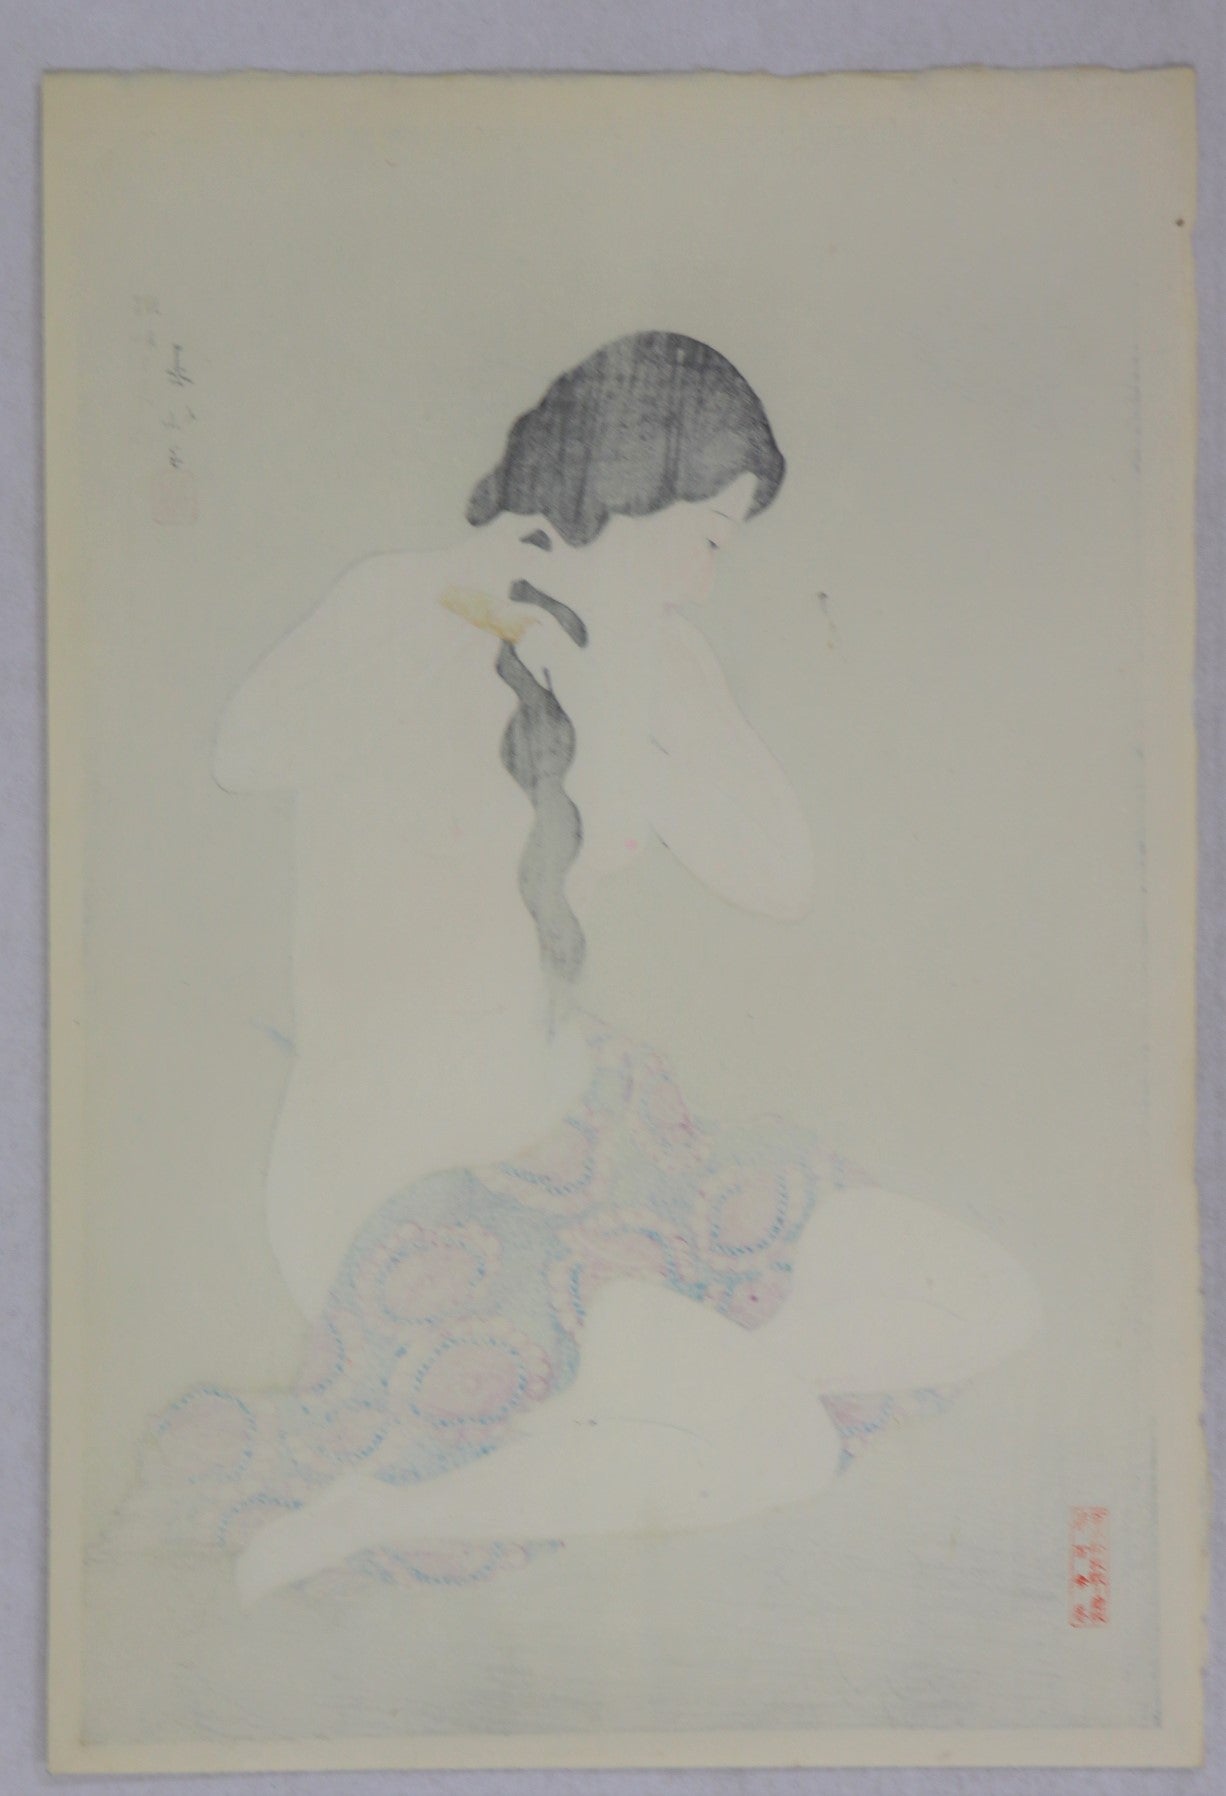 Combing her hair by Natori Shunsen / Se peignant les cheveux par Natori Shunsen(1928)